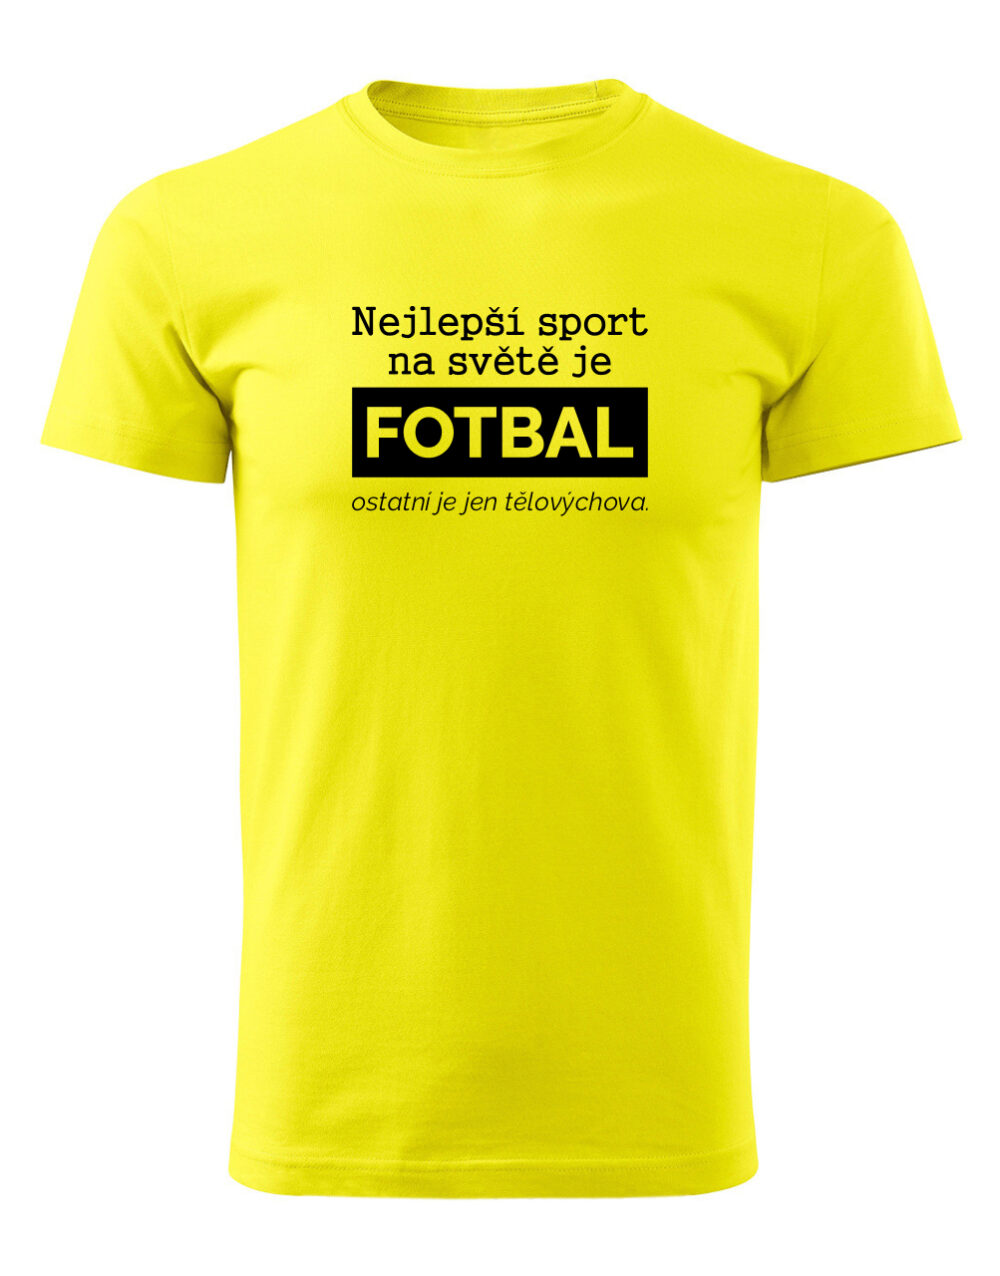 Pánské tričko s potiskem Nejlepší sport je fotbal žlutá